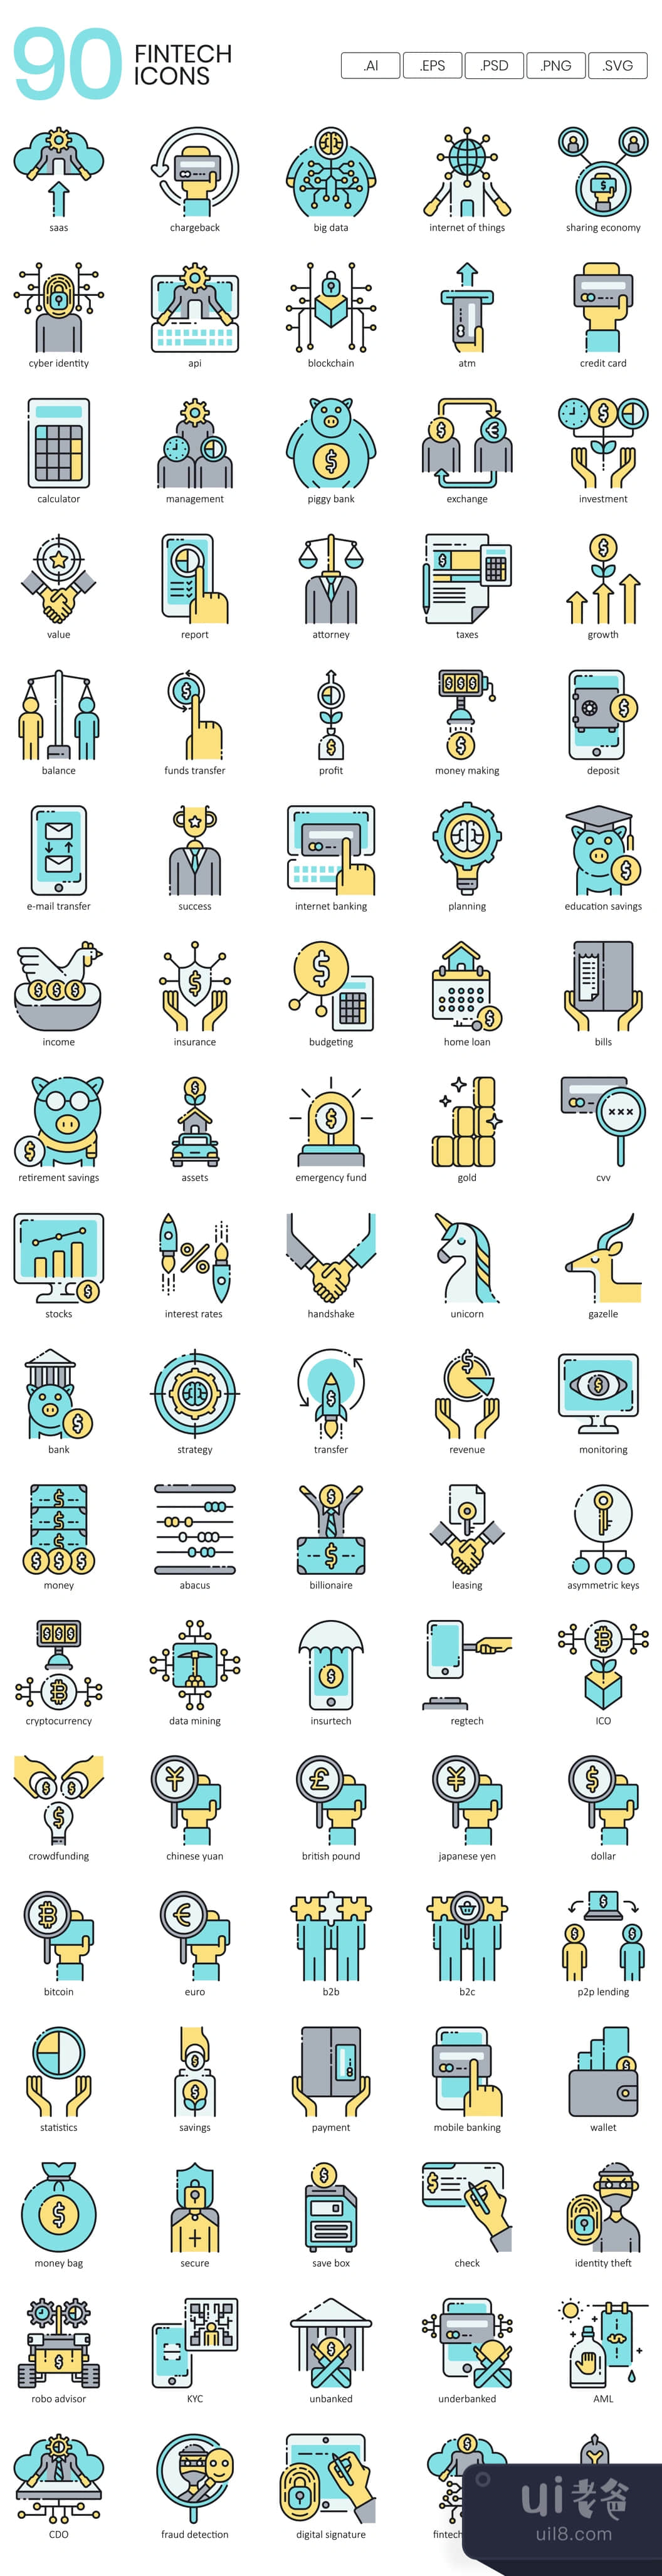 90个金融技术图标 (90 Fintech Icons)插图1